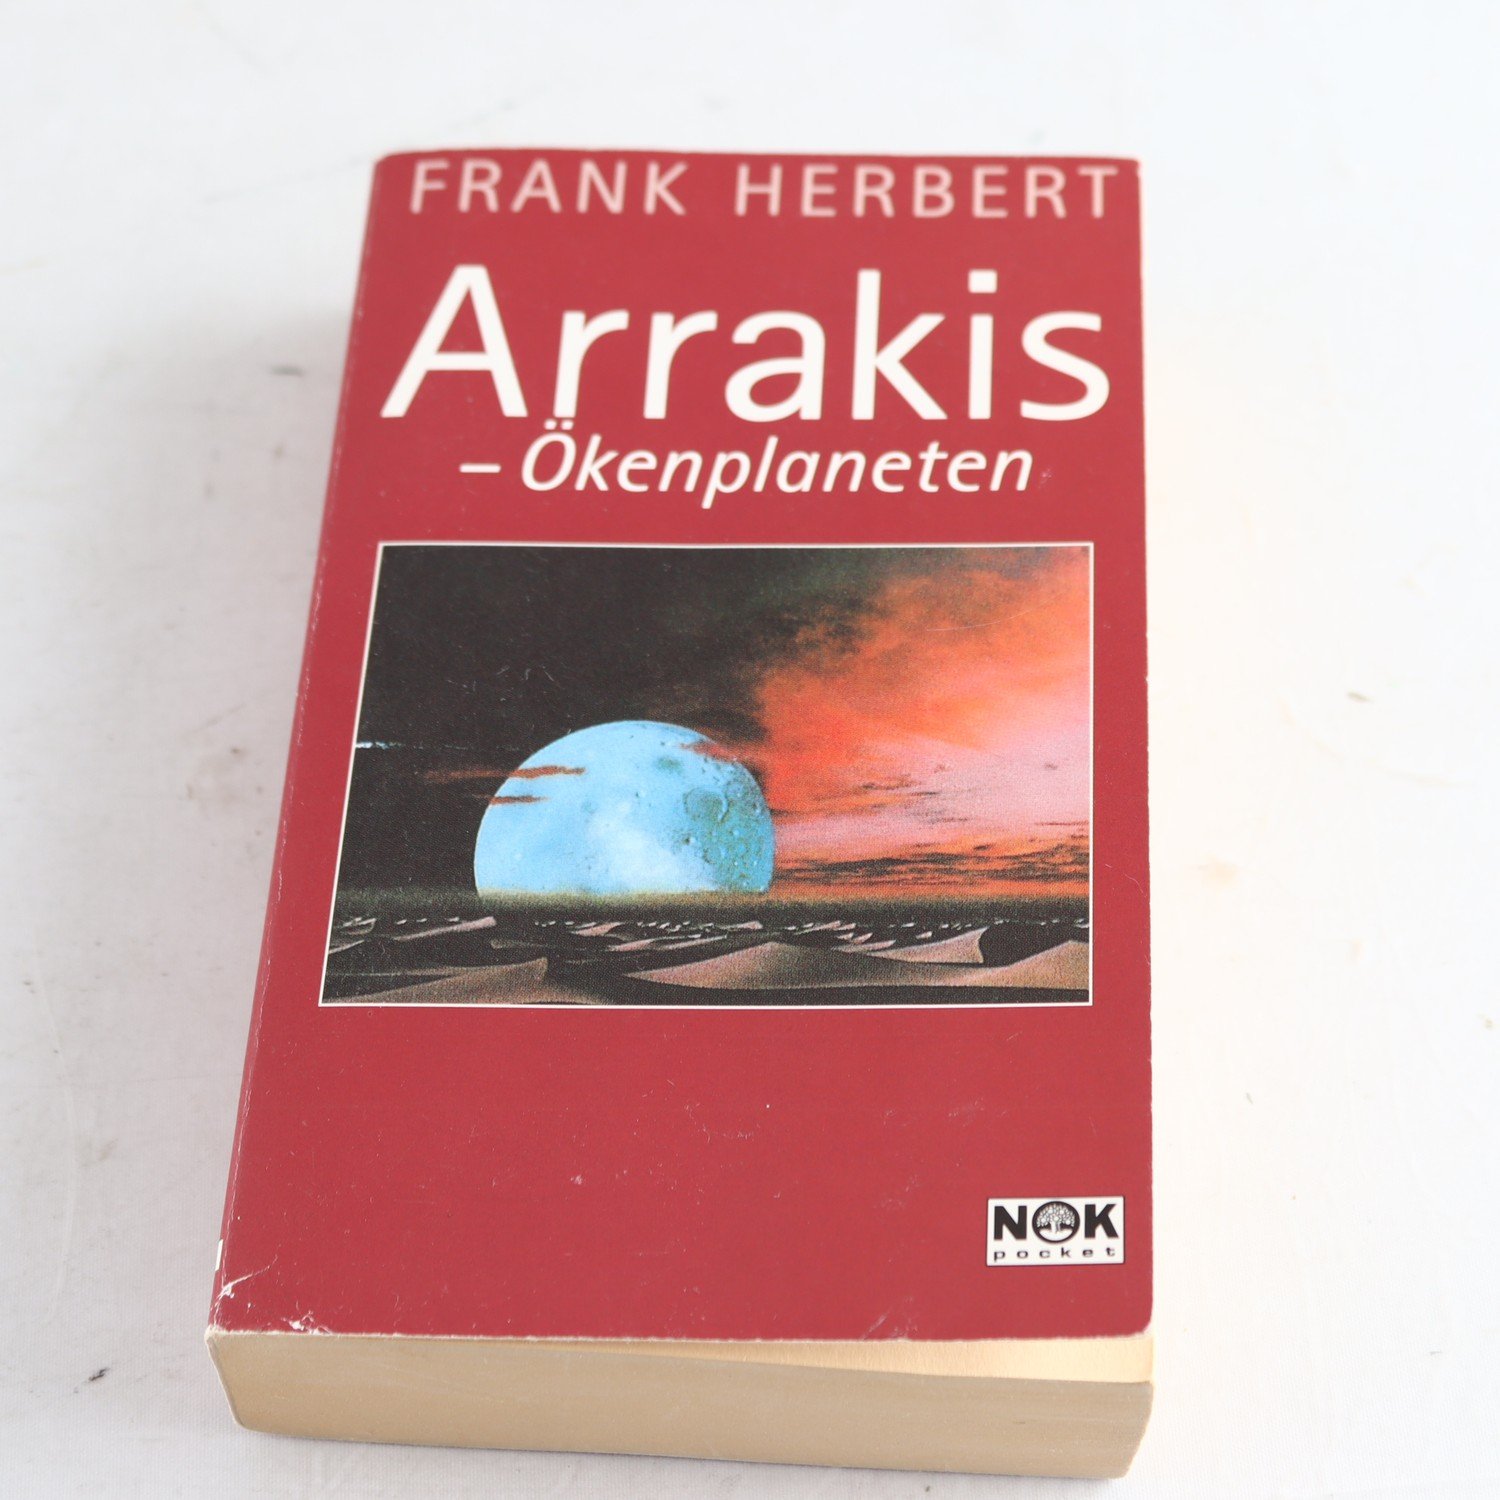 Frank Herbert, Arrakis – Ökenplaneten (Dune), svensk utgåva